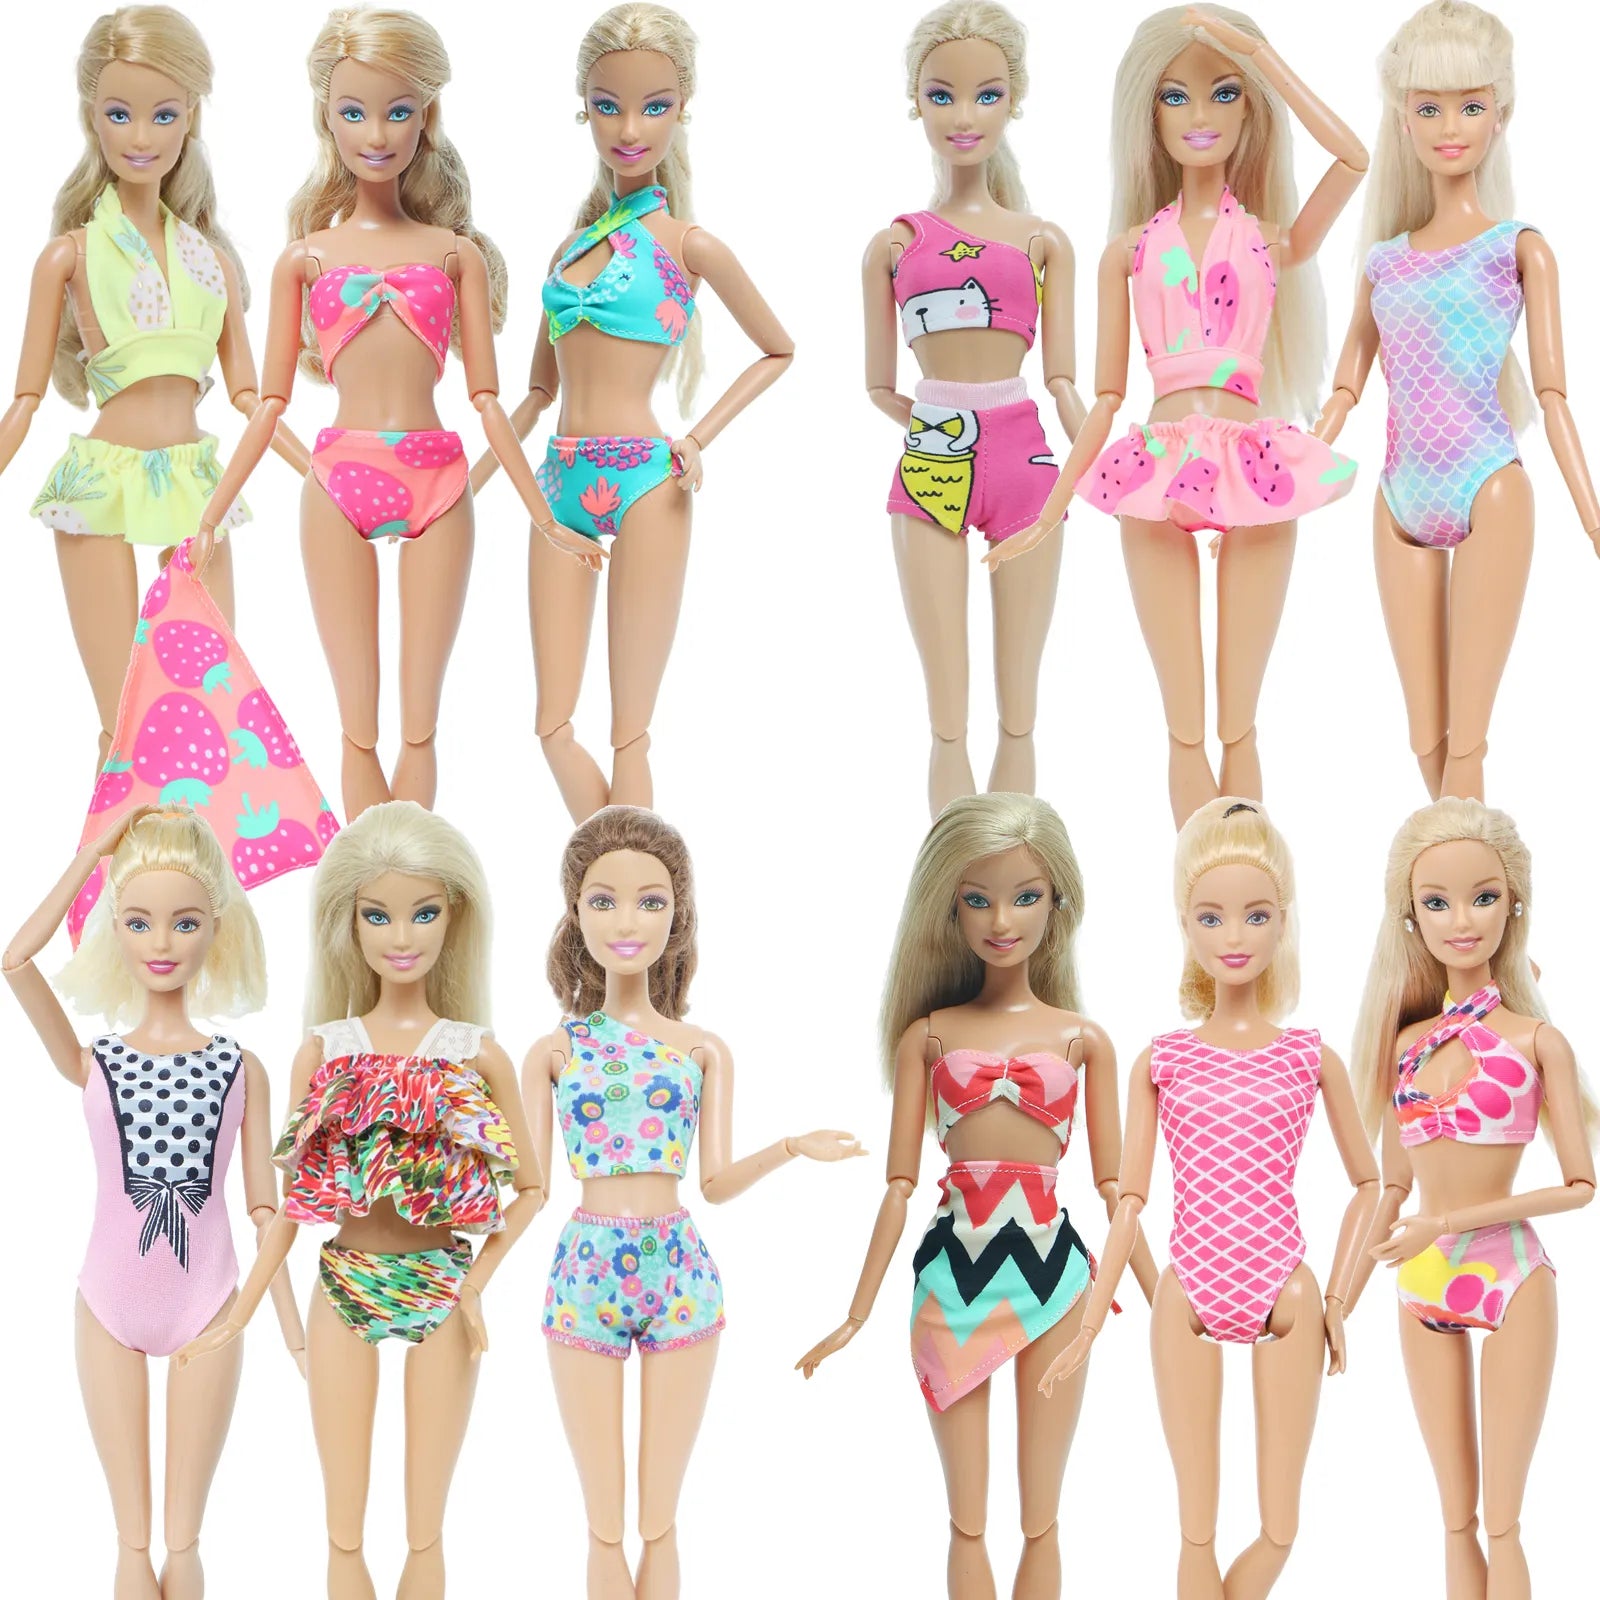 3 seta de traje de boneca de boneca artesanal Biquíni Bra Tops calças roupas de natação roupas de banho de praia para acessórios de bonecas Barbie